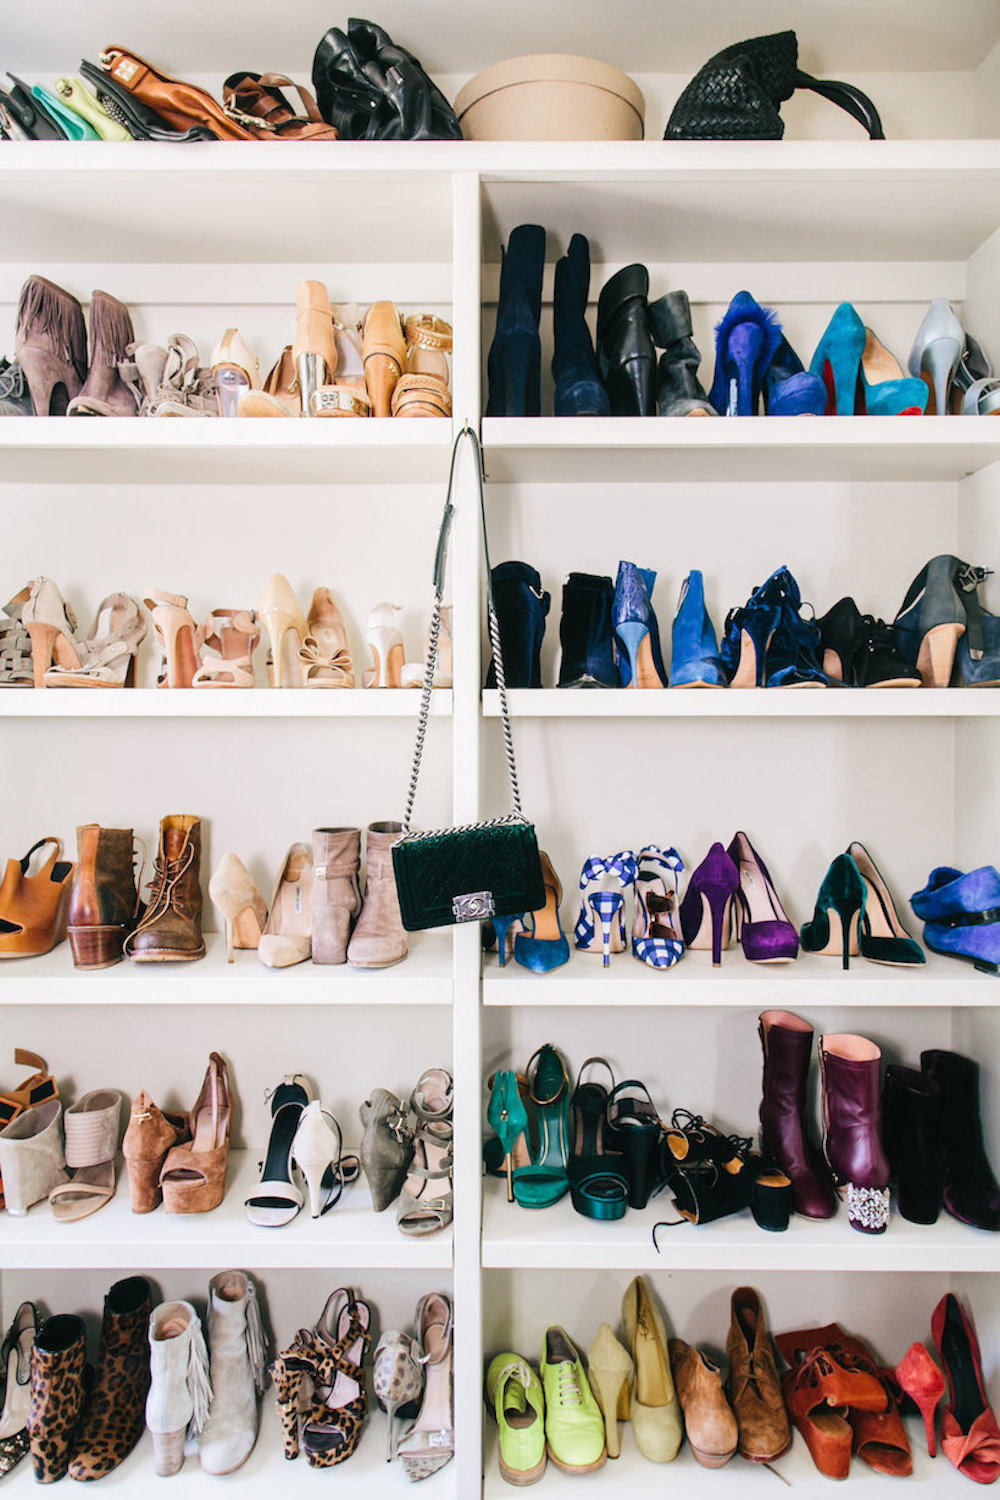 dream closet, shoe collection, brooklyn decker closet